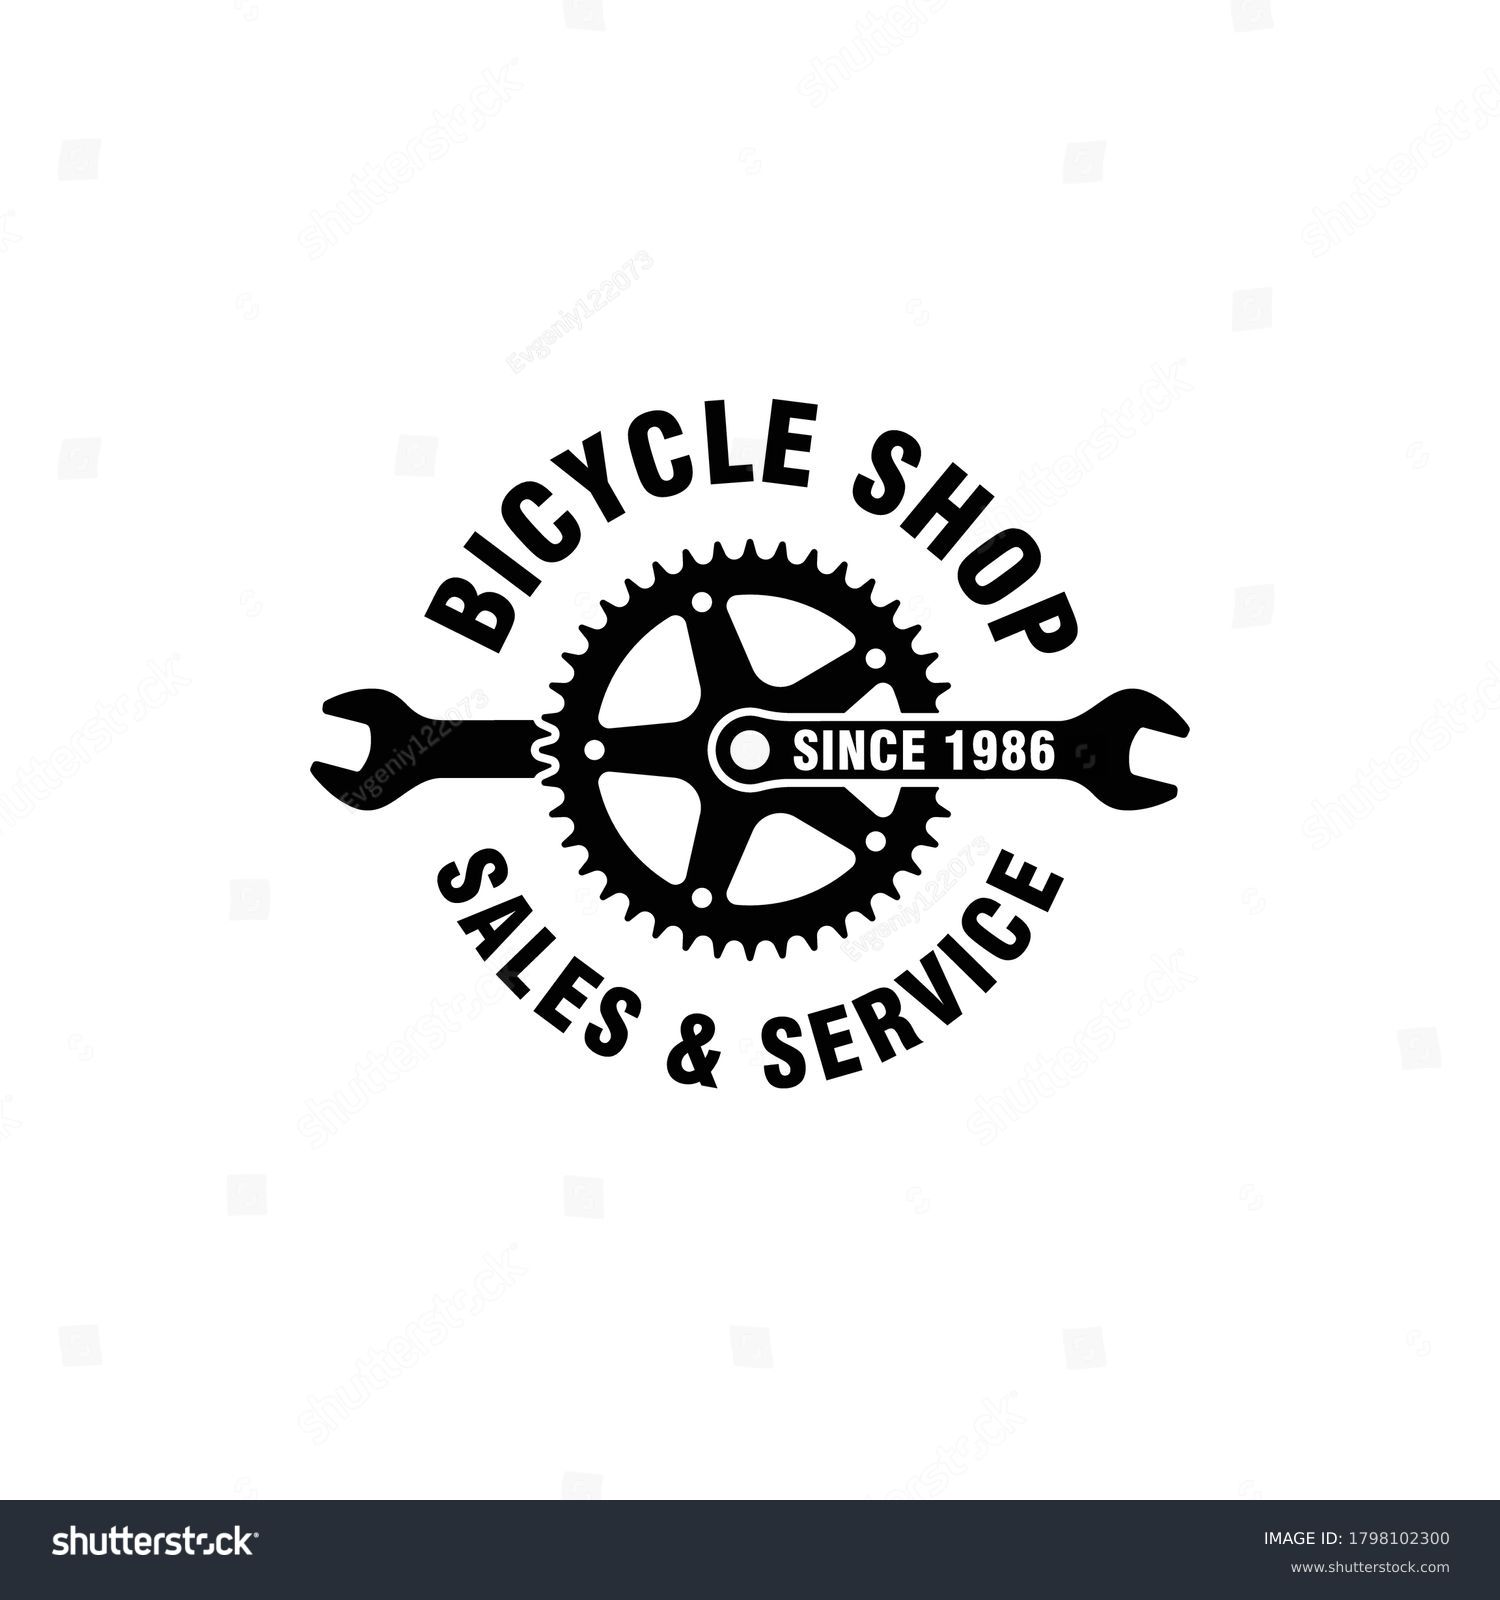 10,690 Bike repair logo Images, Stock Photos & Vectors | Shutterstock